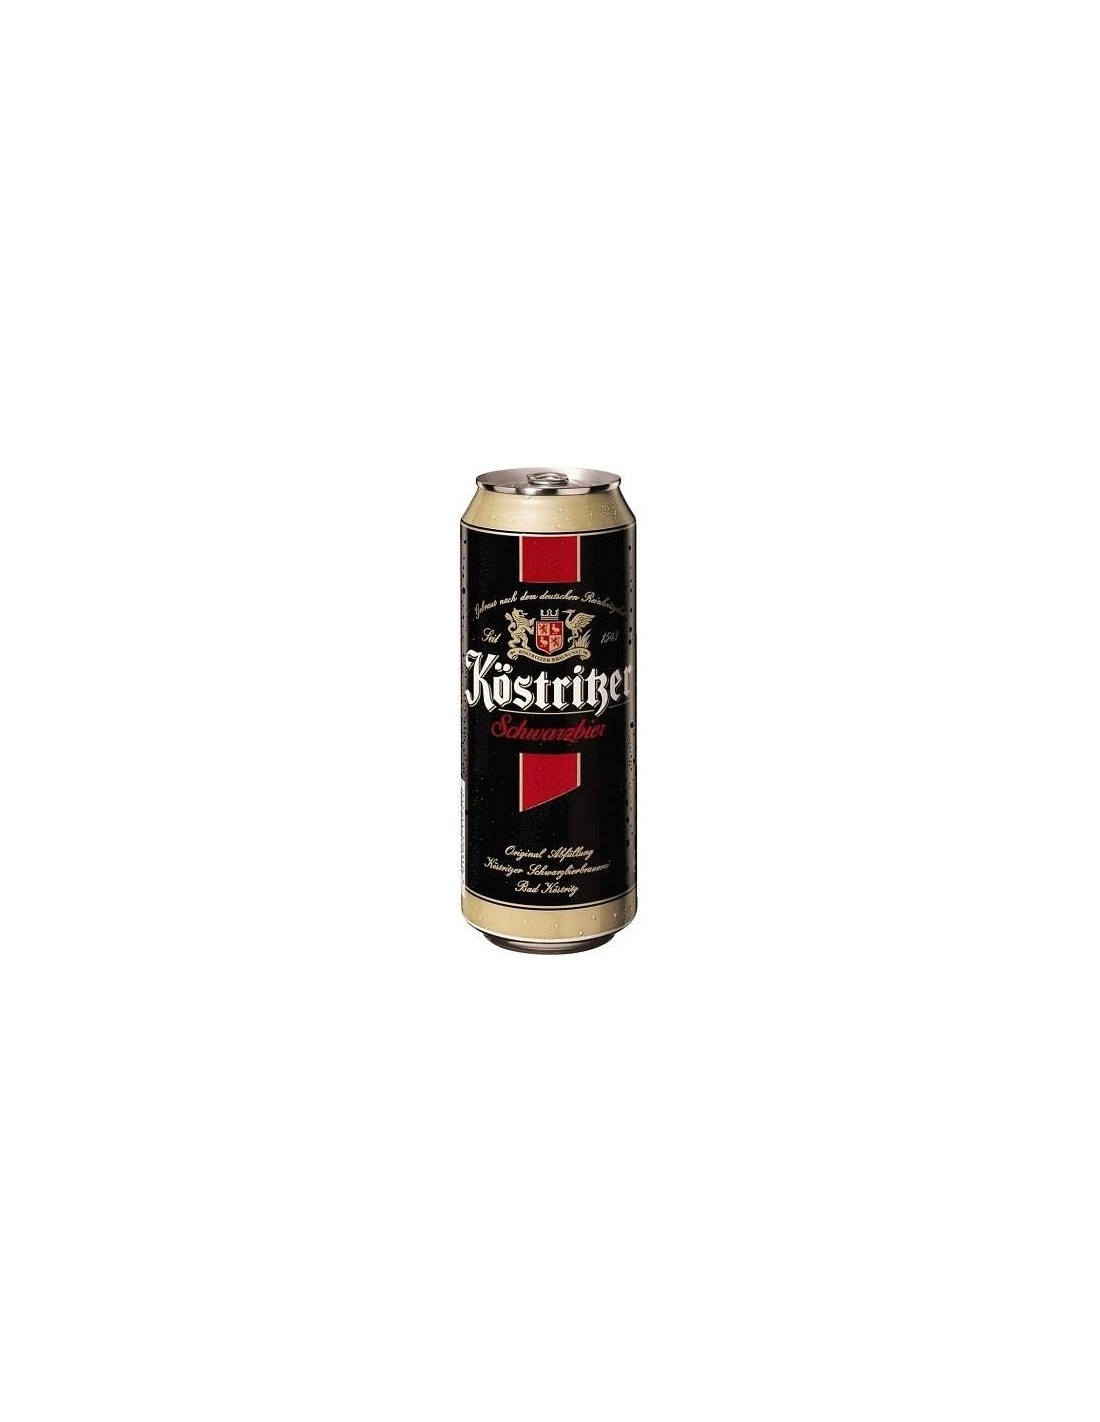 Bere neagra, filtrata Kostritzer, 4.8% alc., 0.5L, Germania alcooldiscount.ro